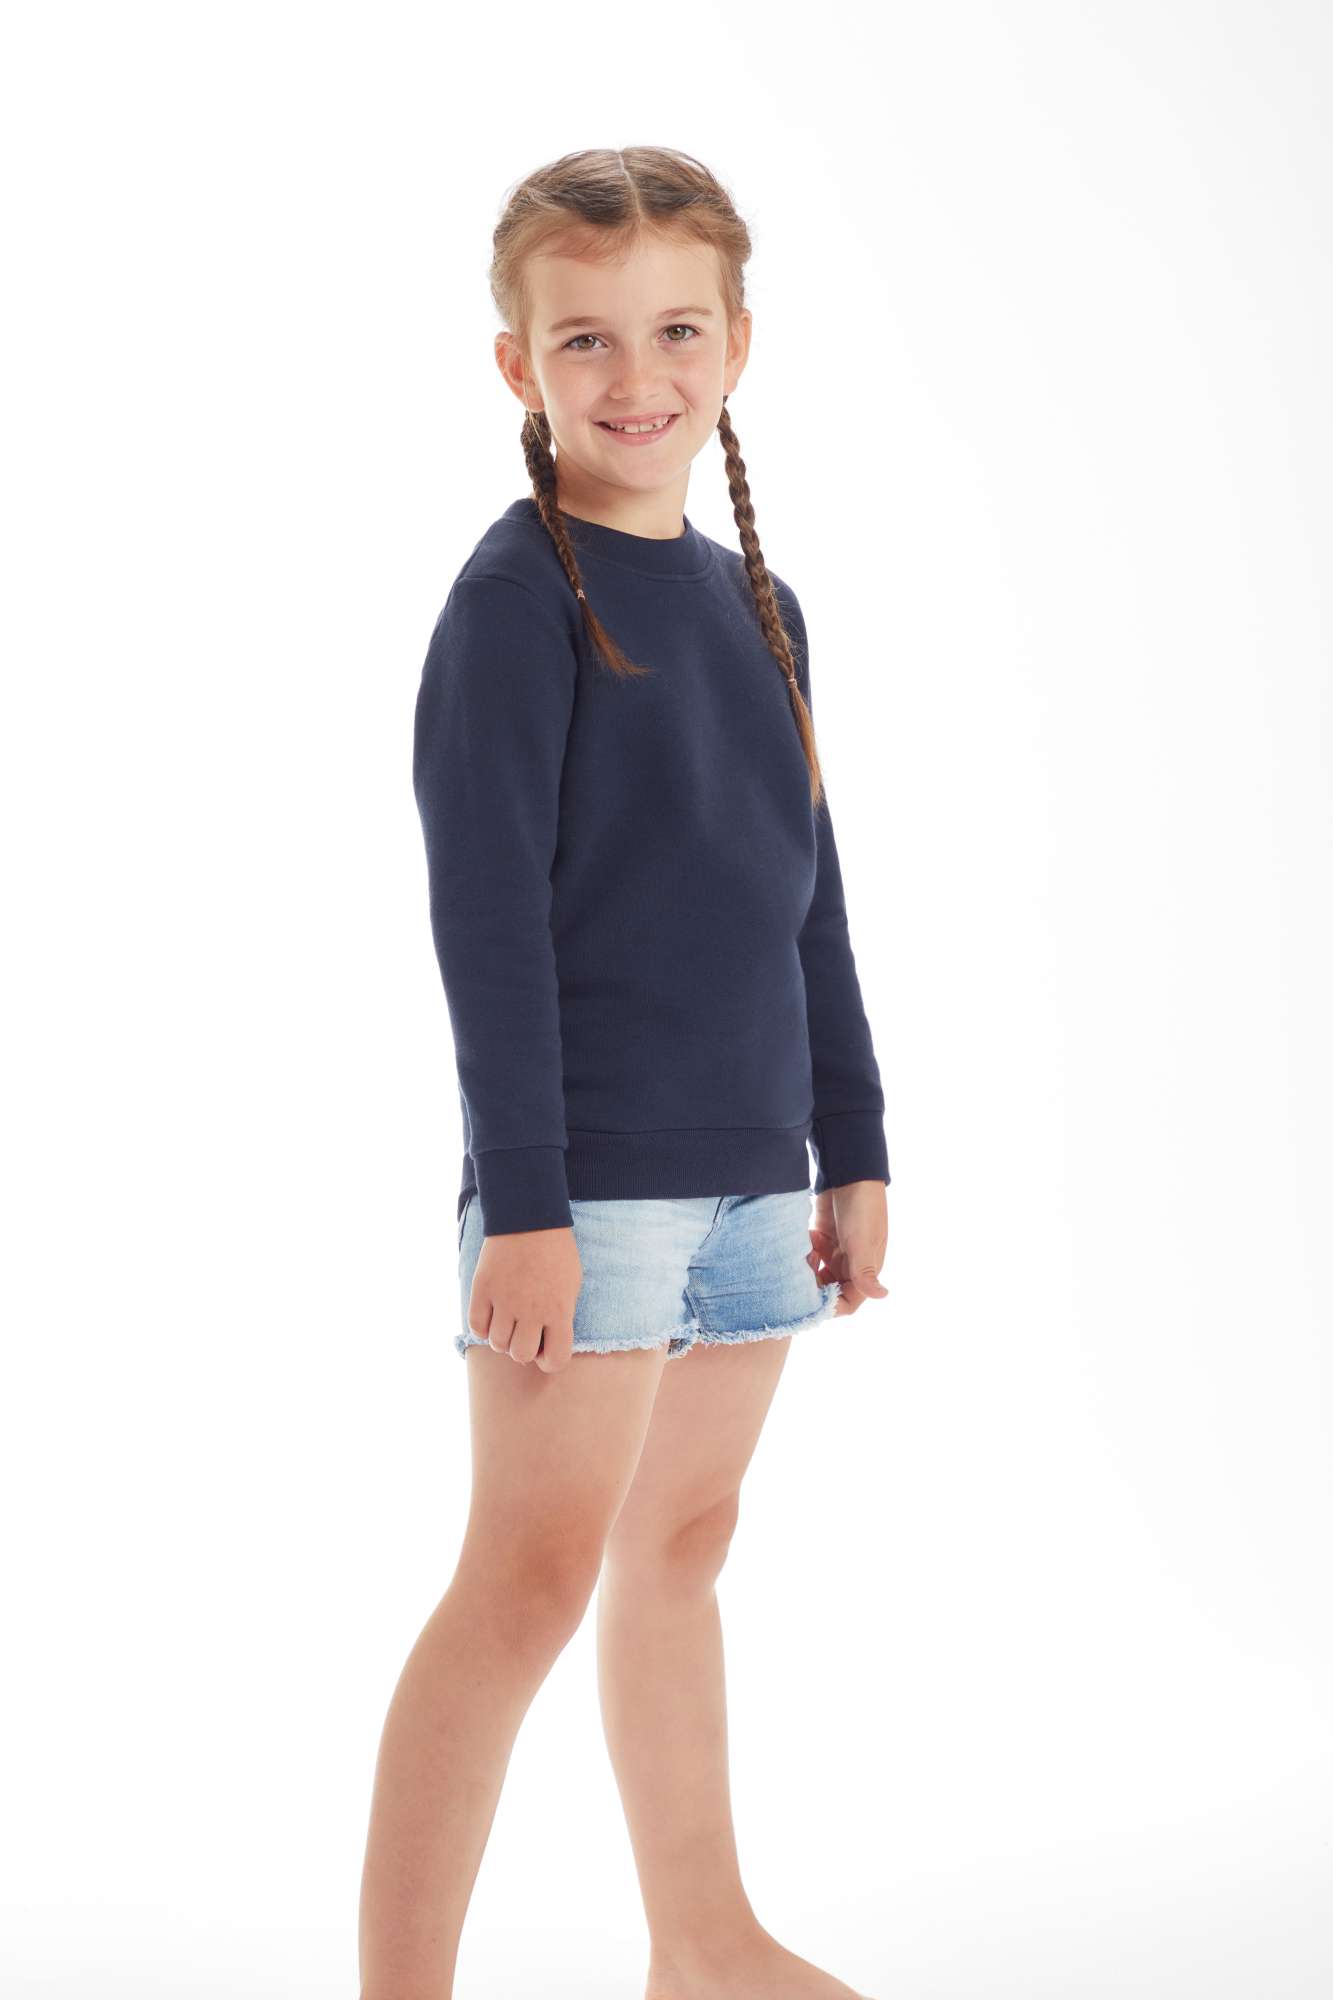 Mantis Kids Kids´ Essential Sweatshirt Heather Grey Melange 4-5 Jahre (MK05)